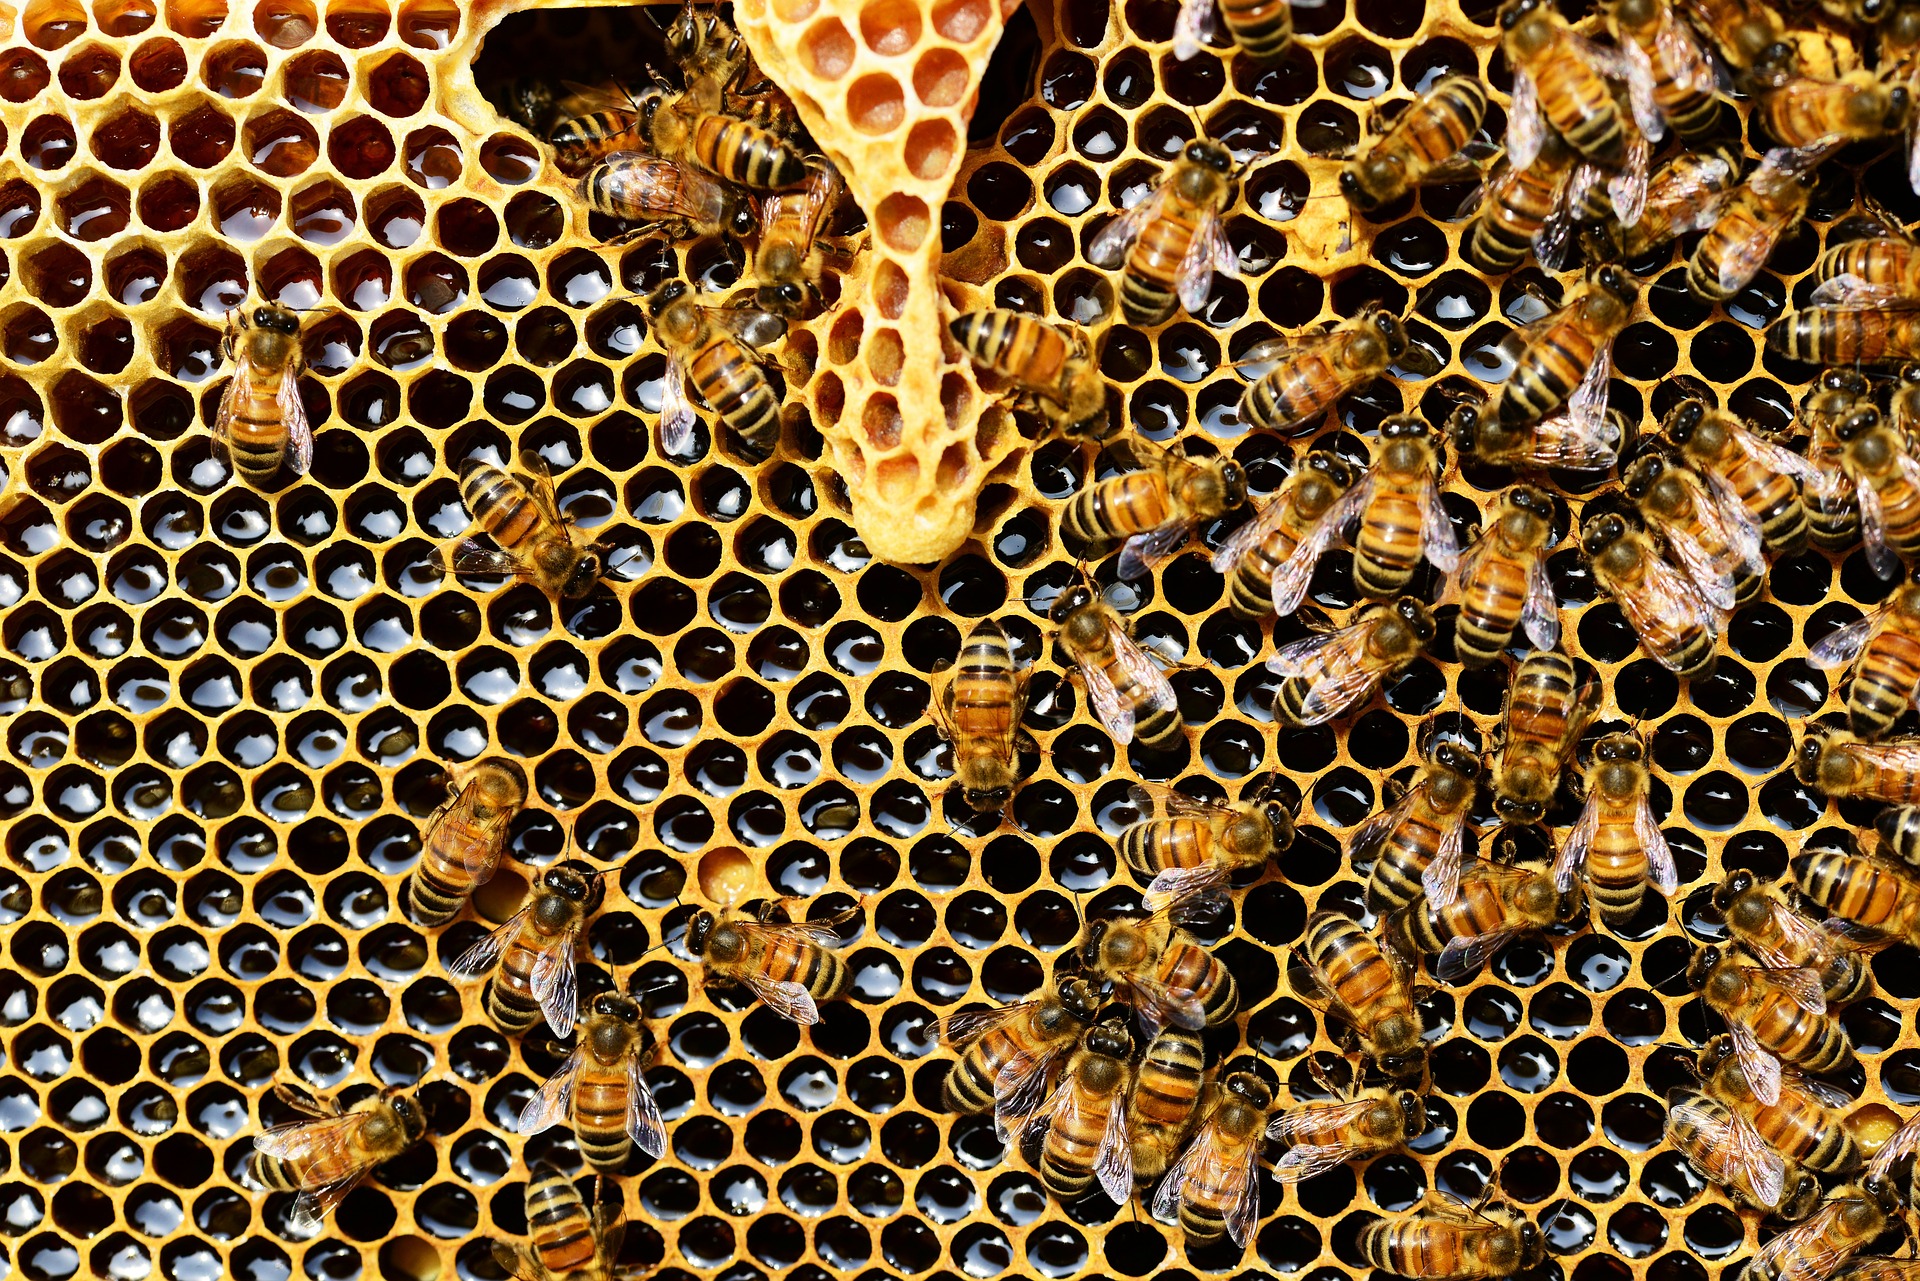 Брянские пчеловоды поддержали новый федеральный закон об их промысле